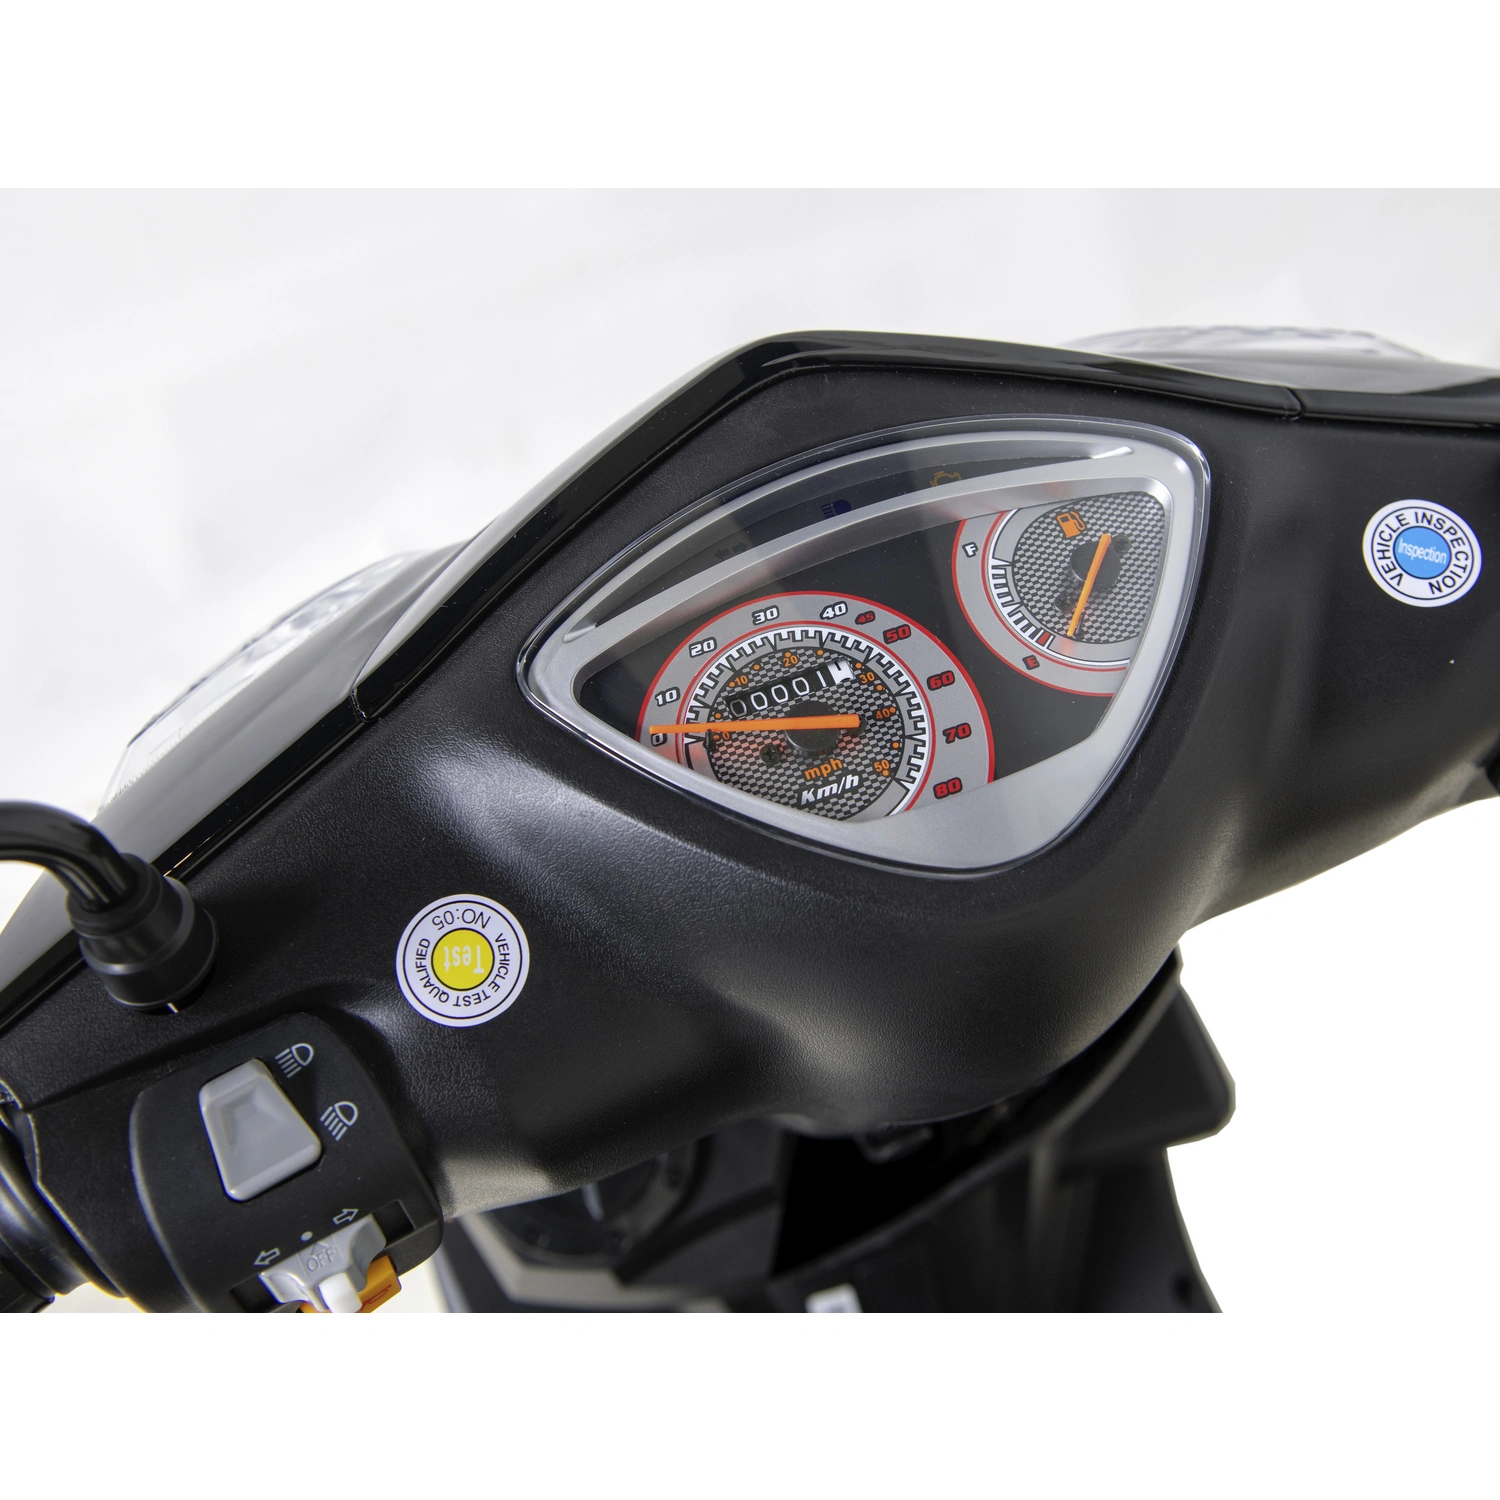 GT UNION Motorroller »GT3«, 50 cm³, 45 km/h, Euro 5 | Motorroller